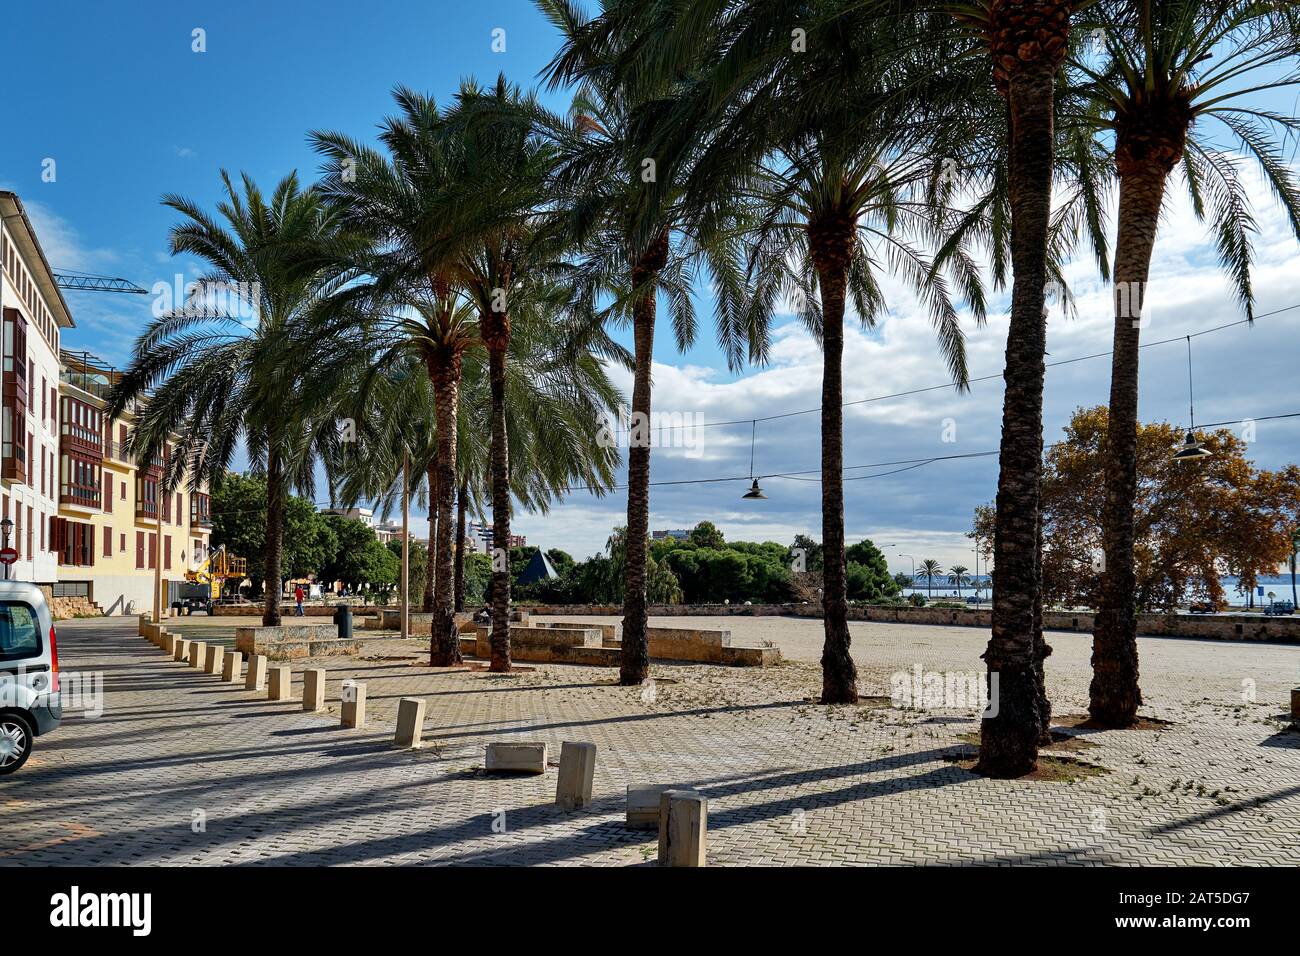 Sunny coastal palm lined street empty promenade leading along Mediterranean Sea, Palma de Mallorca, Baleares, Spain Stock Photo